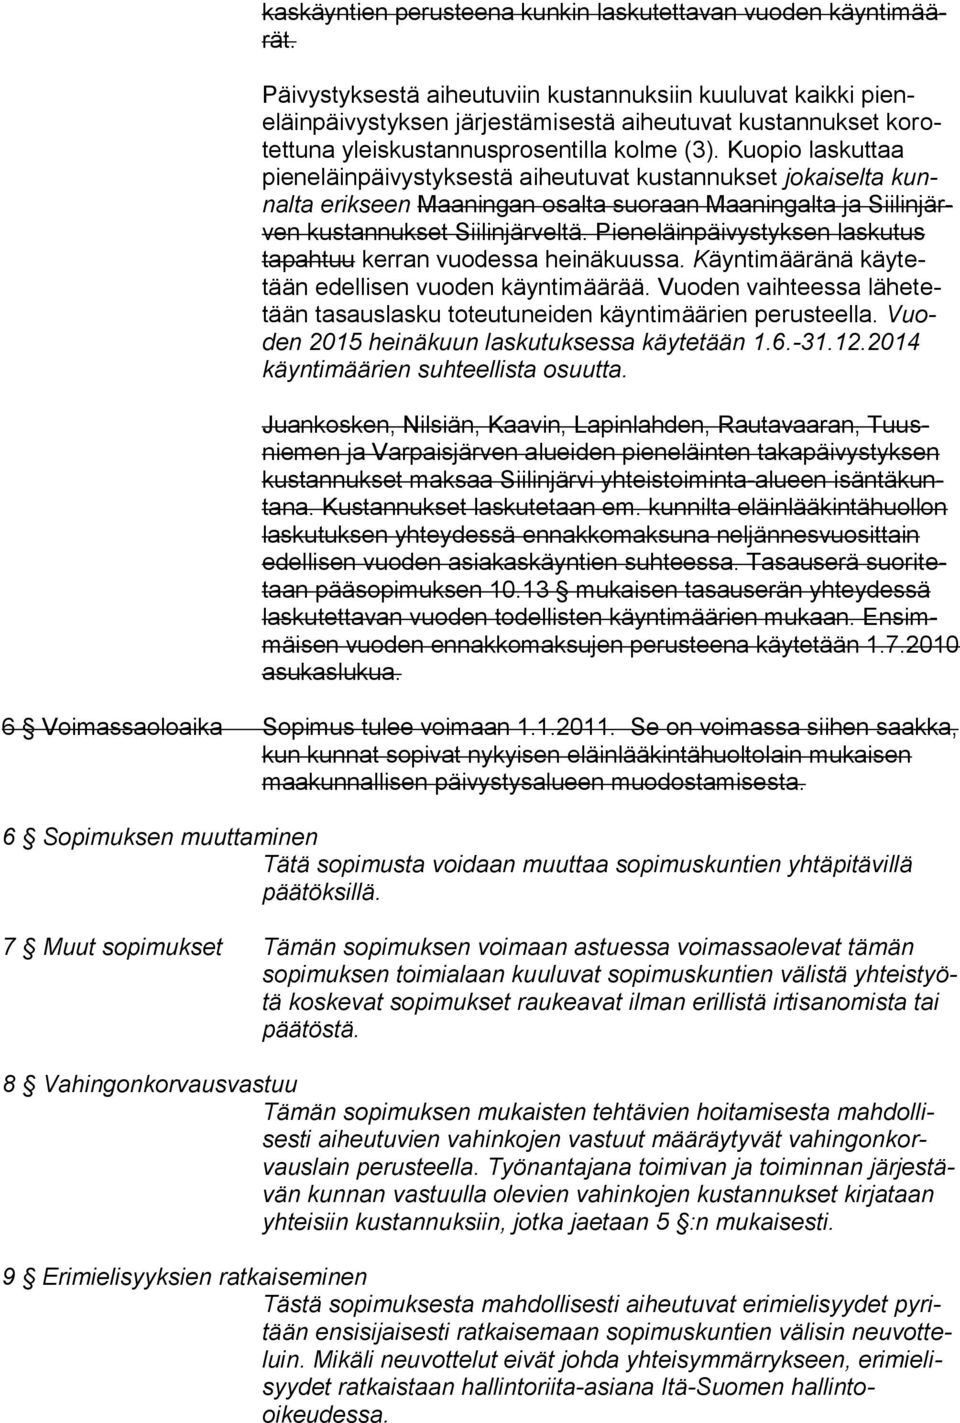 Kuopio laskuttaa pieneläinpäivystyksestä aiheutuvat kustannukset jokaiselta kunnalta erikseen Maaningan osalta suoraan Maaningalta ja Siilinjärven kustannukset Siilinjärveltä.